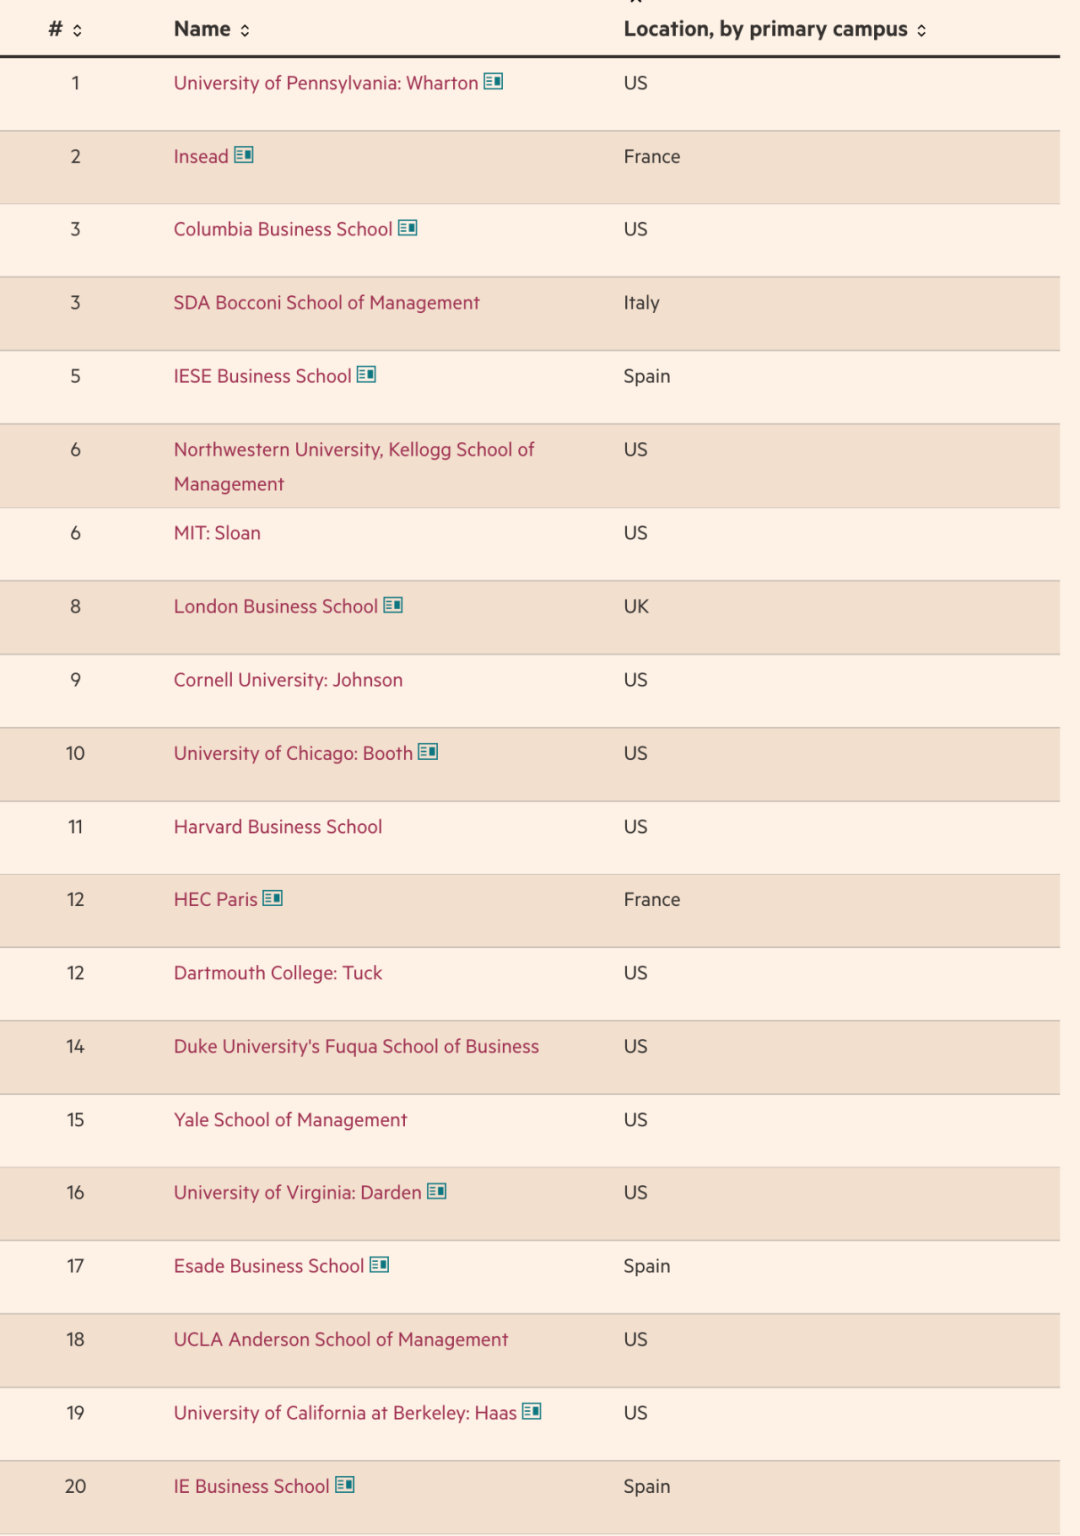 英国《金融时报》2024全球MBA排名